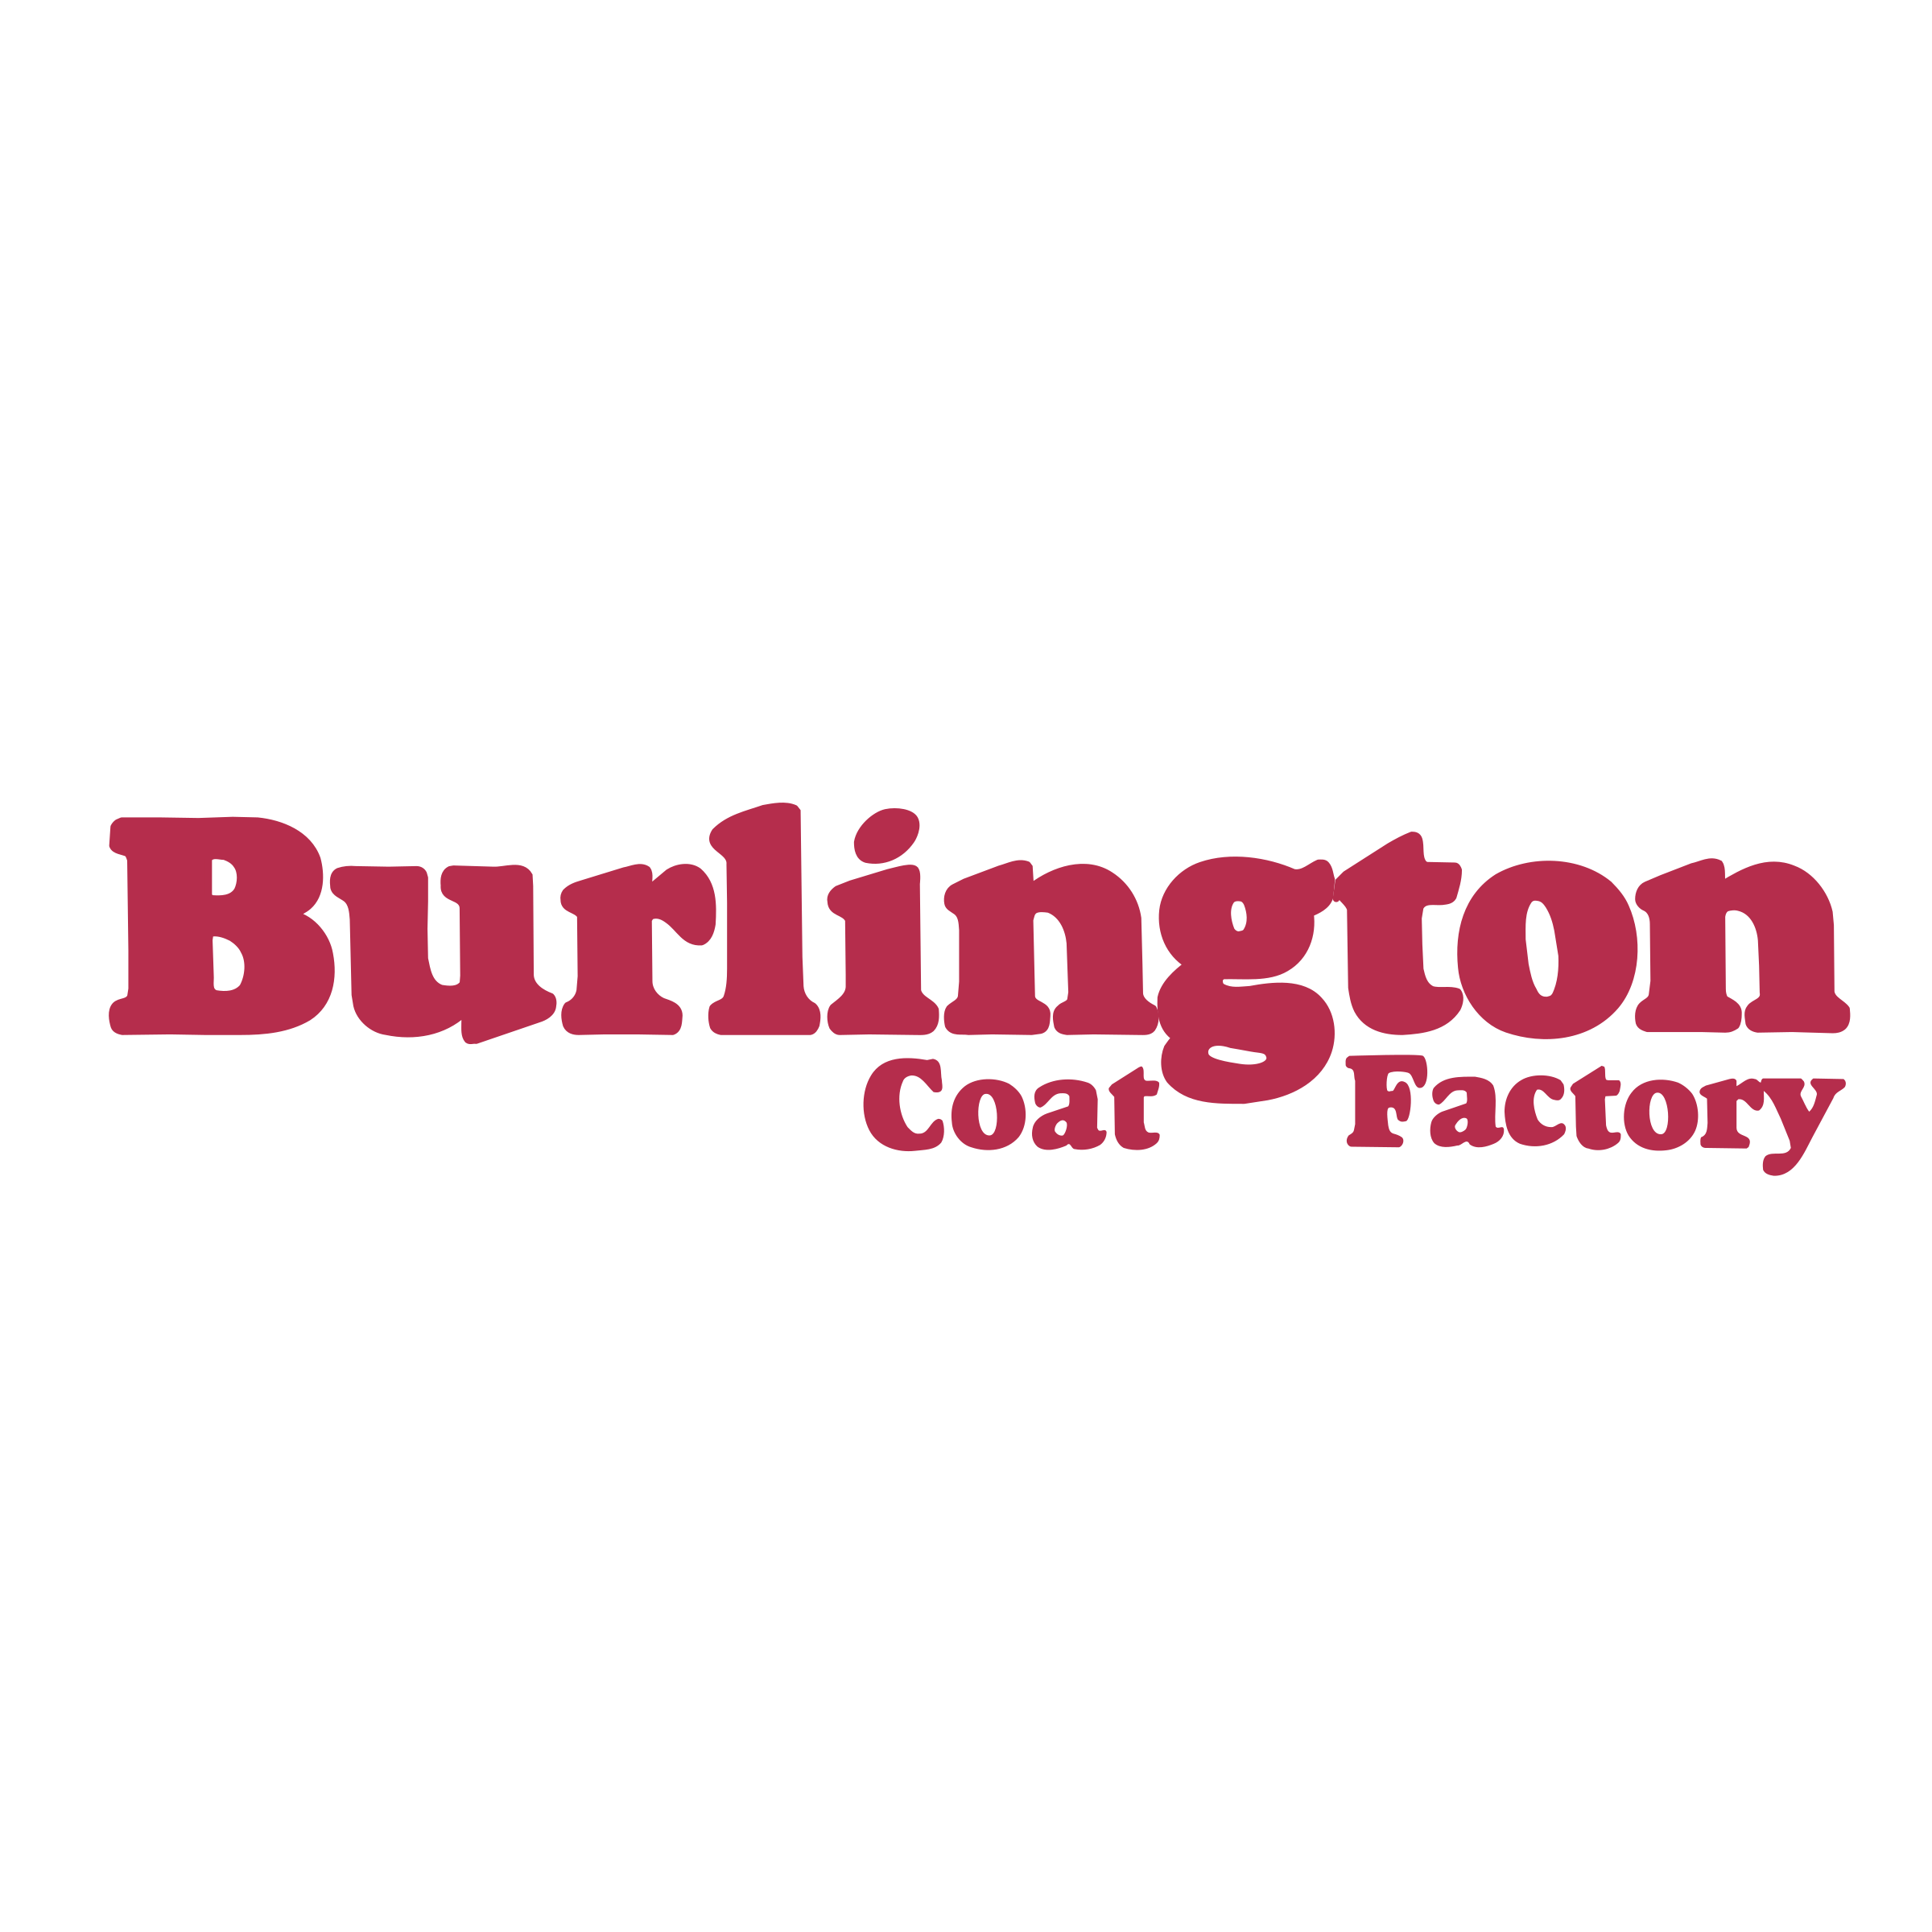 burlington-coat-factory-logo-png-transparent.png